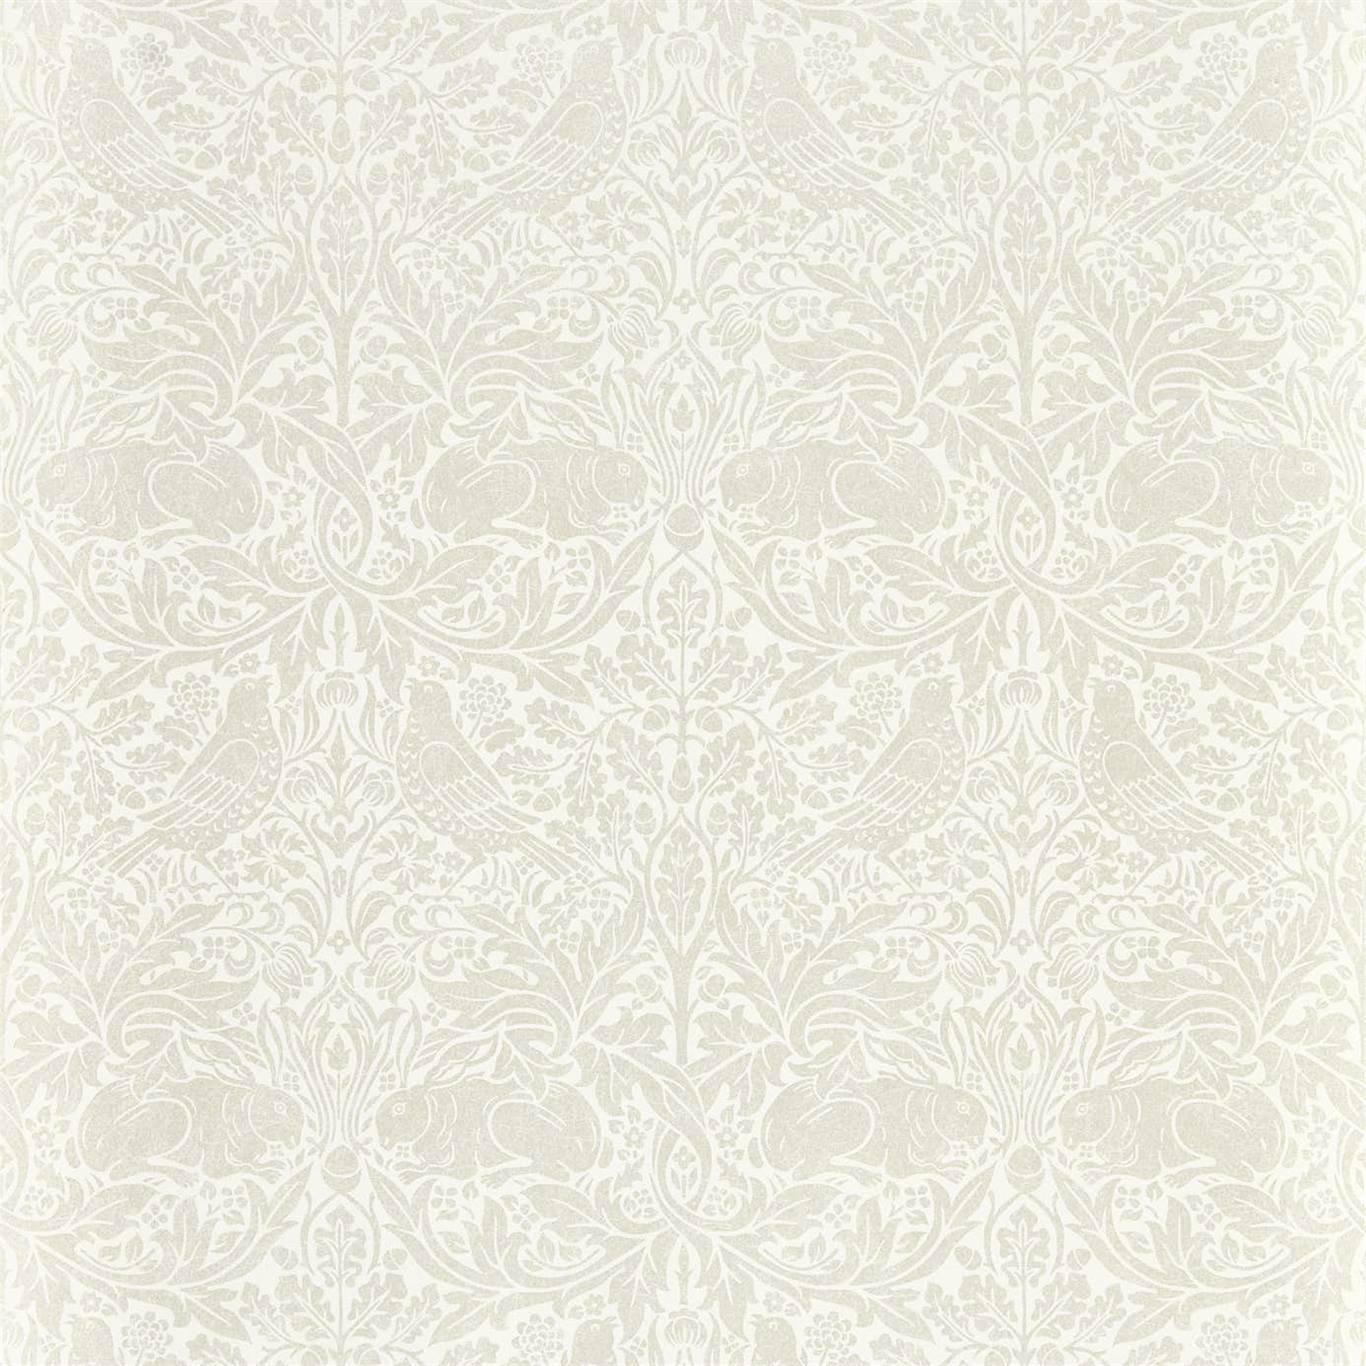 Pure Brer Rabbit White Clover Wallpaper DMPN216534 by Morris & Co